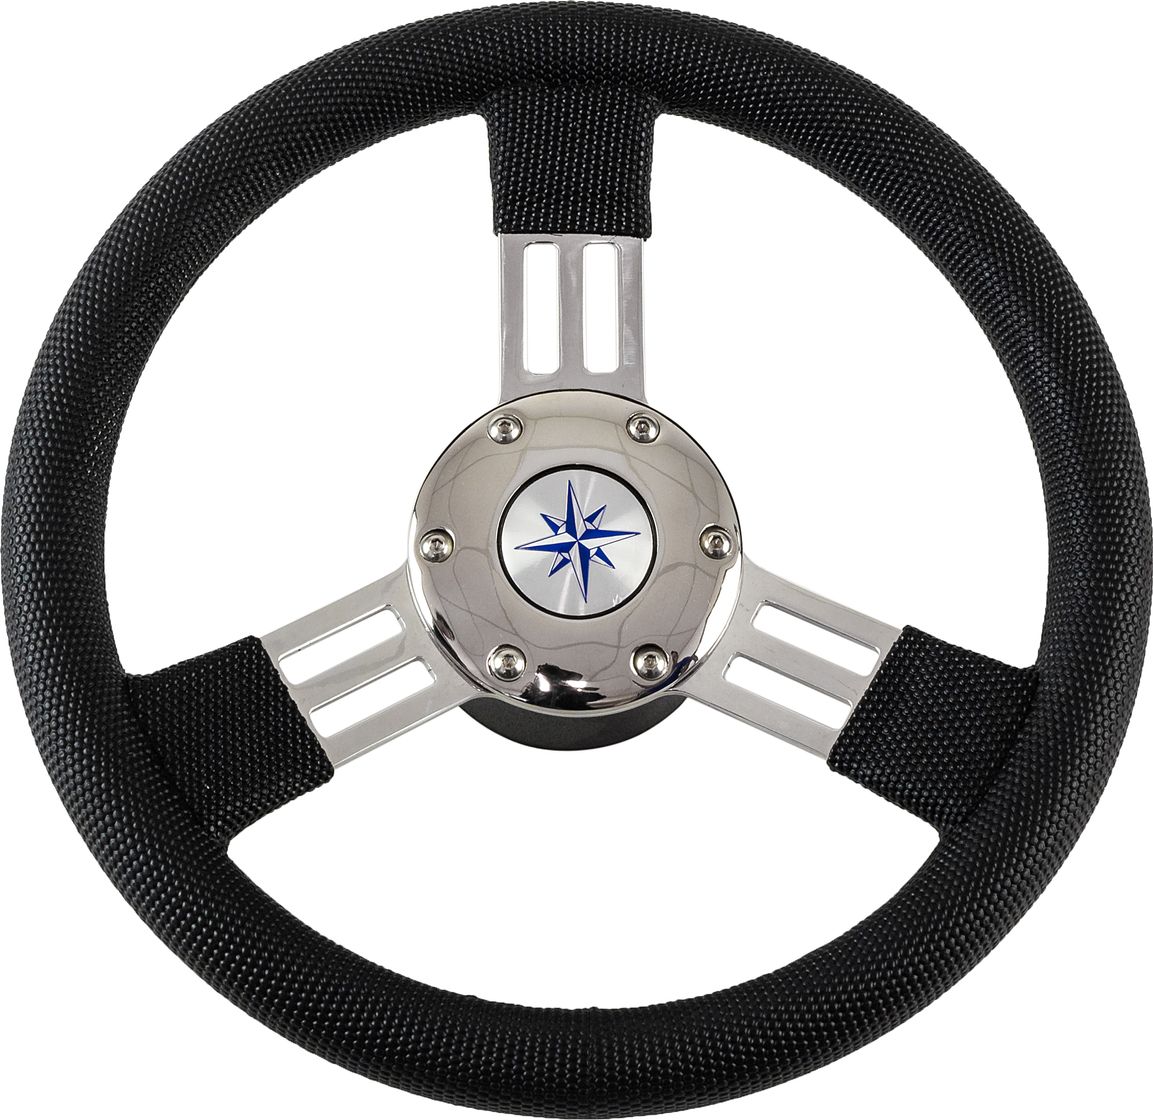 Рулевое колесо PEGASO обод черный, спицы серебряные д. 300 мм VN13327-01 рулевое колесо leader tanegum белый обод серебряные спицы д 330 мм vn7330 08